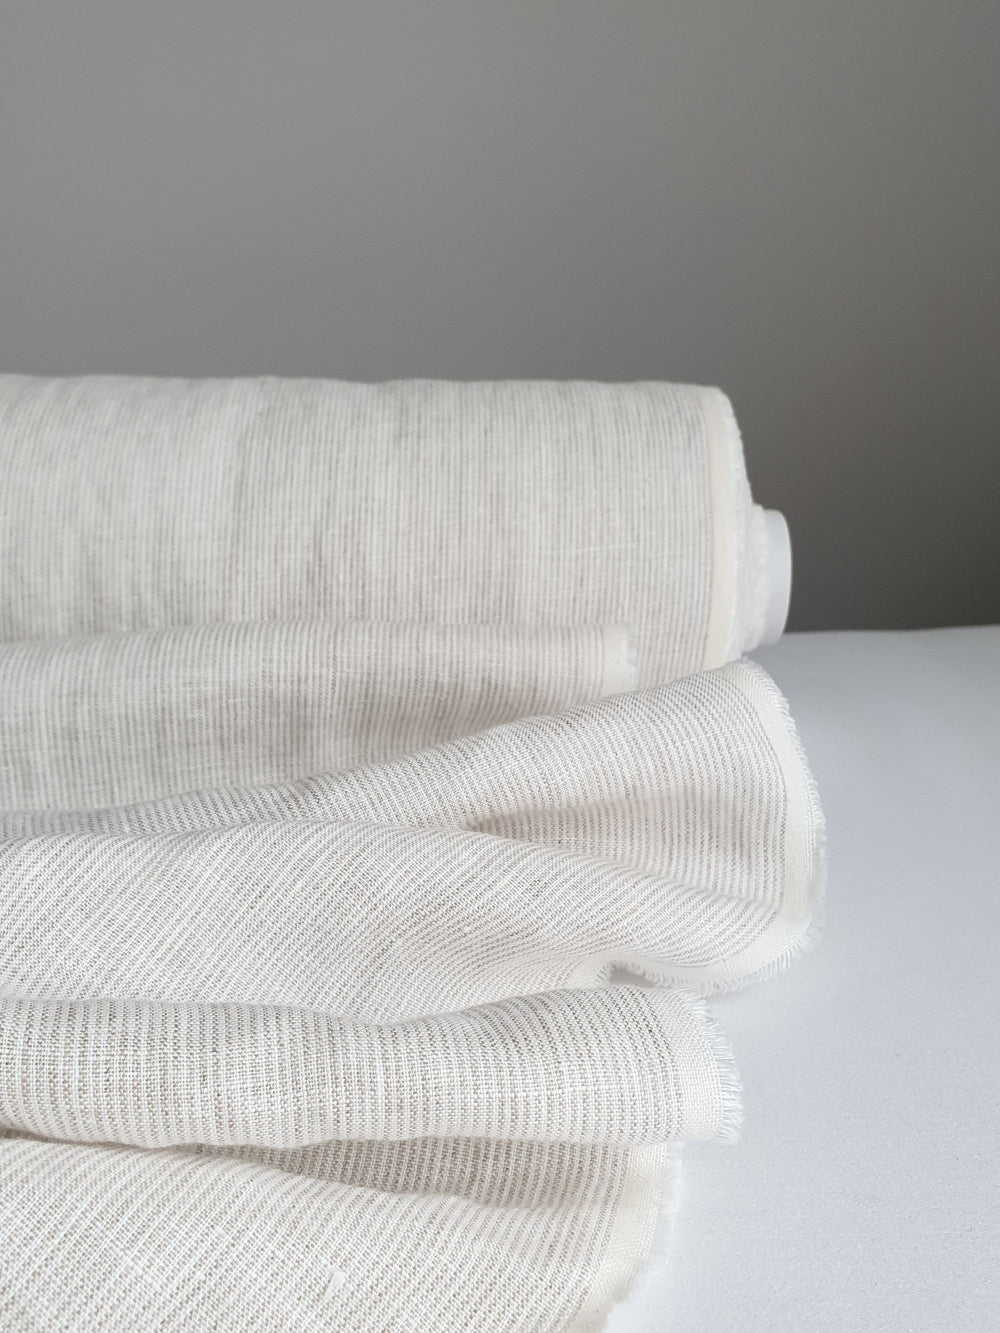 Siena Sand Stripe Linen Fabric - AVLEN